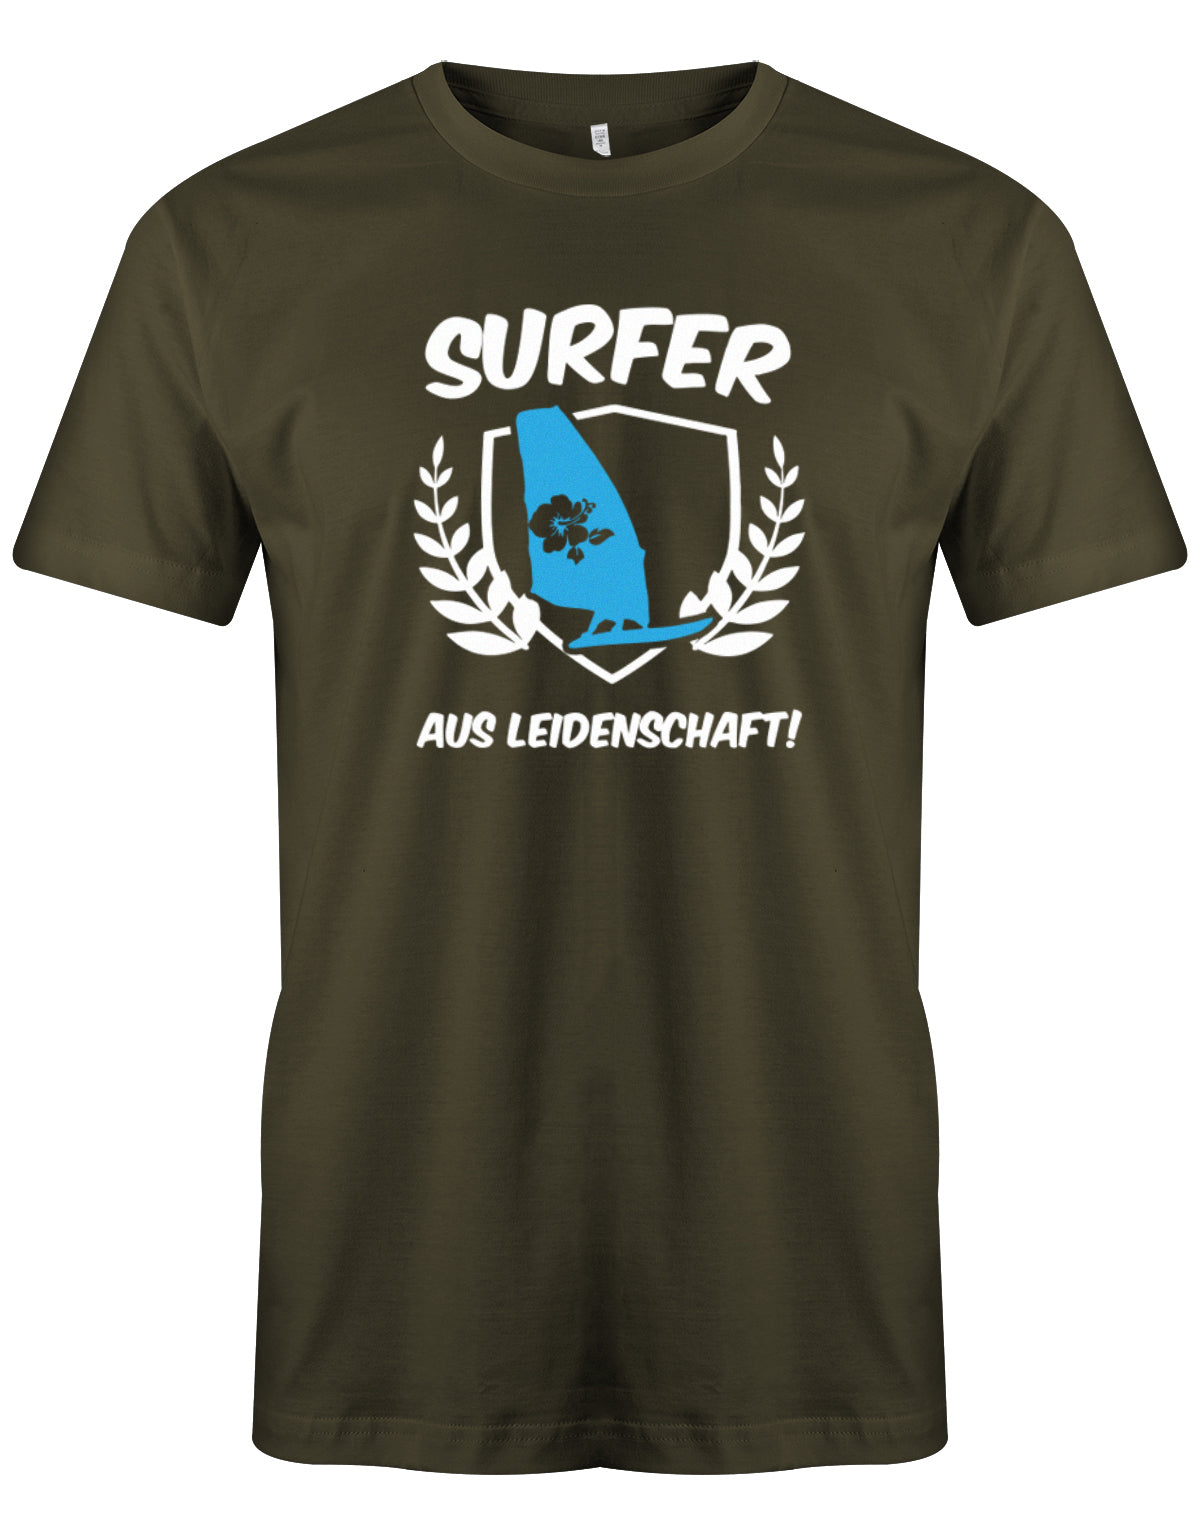 Das lustige Surfer t-shirt bedruckt mit "Surfer Aus Leidenschaft mit Surfer und Hibiskus Segel. Army